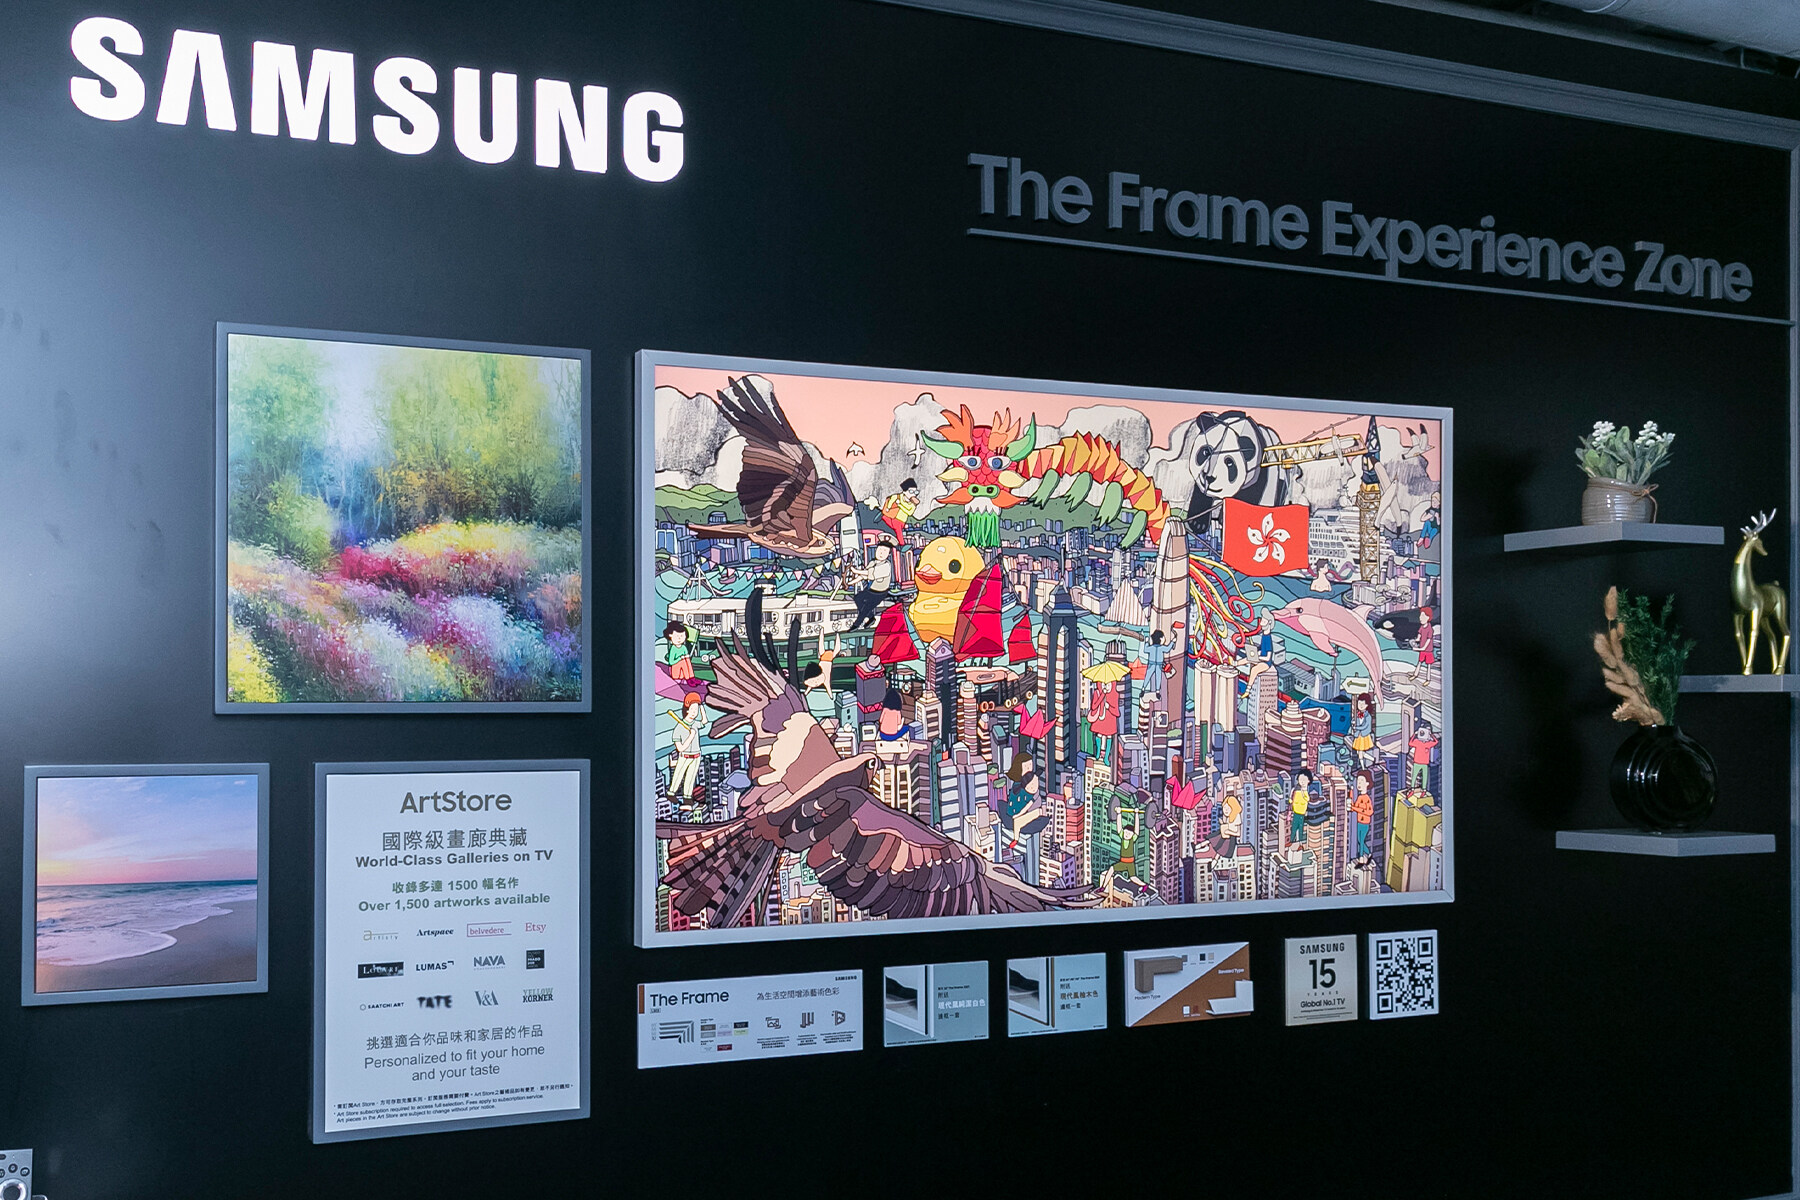 位於展場地下的「Immersive」展區還特設The Frame體驗專區，讓大家親身體驗The Frame的獨